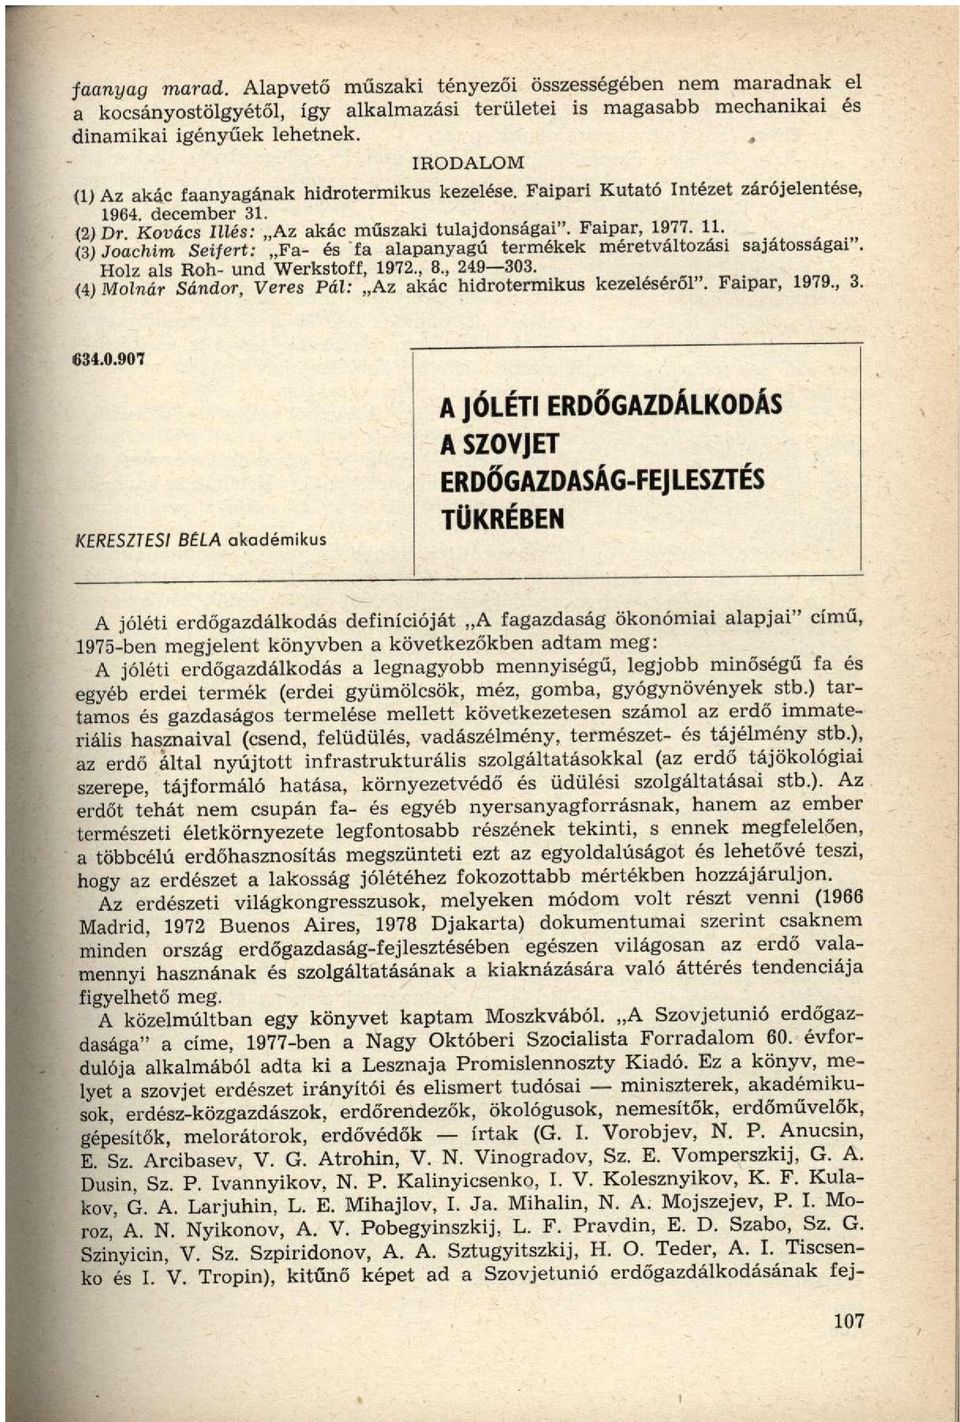 (3) Joachim Seifert: Fa- és fa alapanyagú termékek méretváltozási sajátosságai". Holz als Roh- und Werkstoff, 1972., 8., 249 303. (4) Molnár Sándor, Veres Pál: Az akác hidrotermikus kezeléséről".